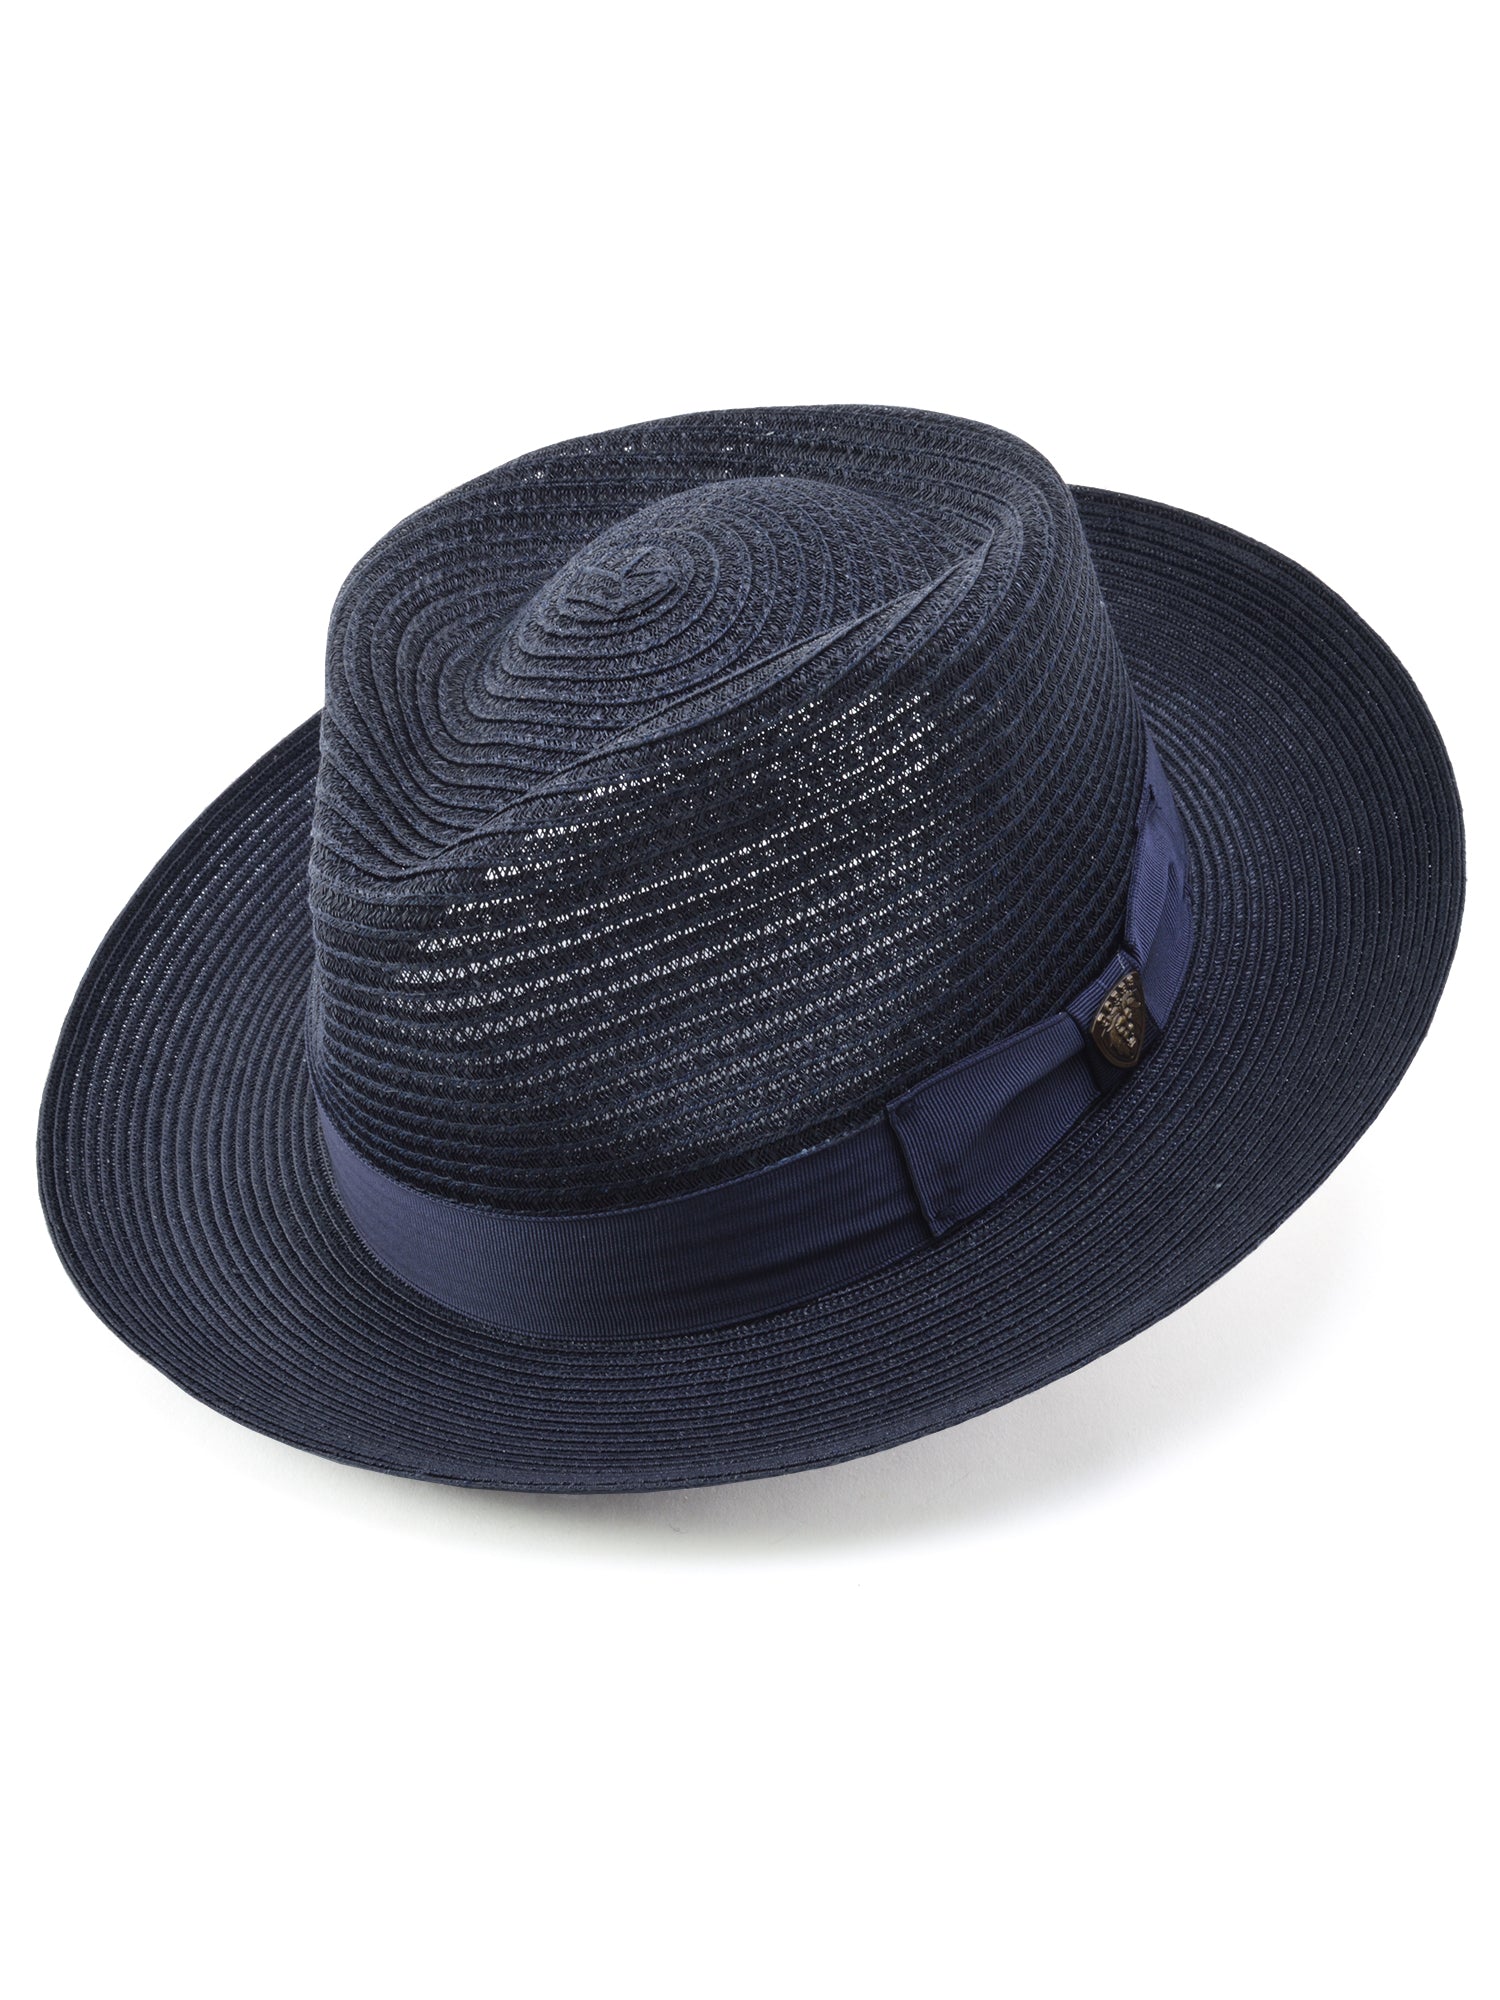 Dobbs Golden Coast Vented Milan Straw Hat in Navy